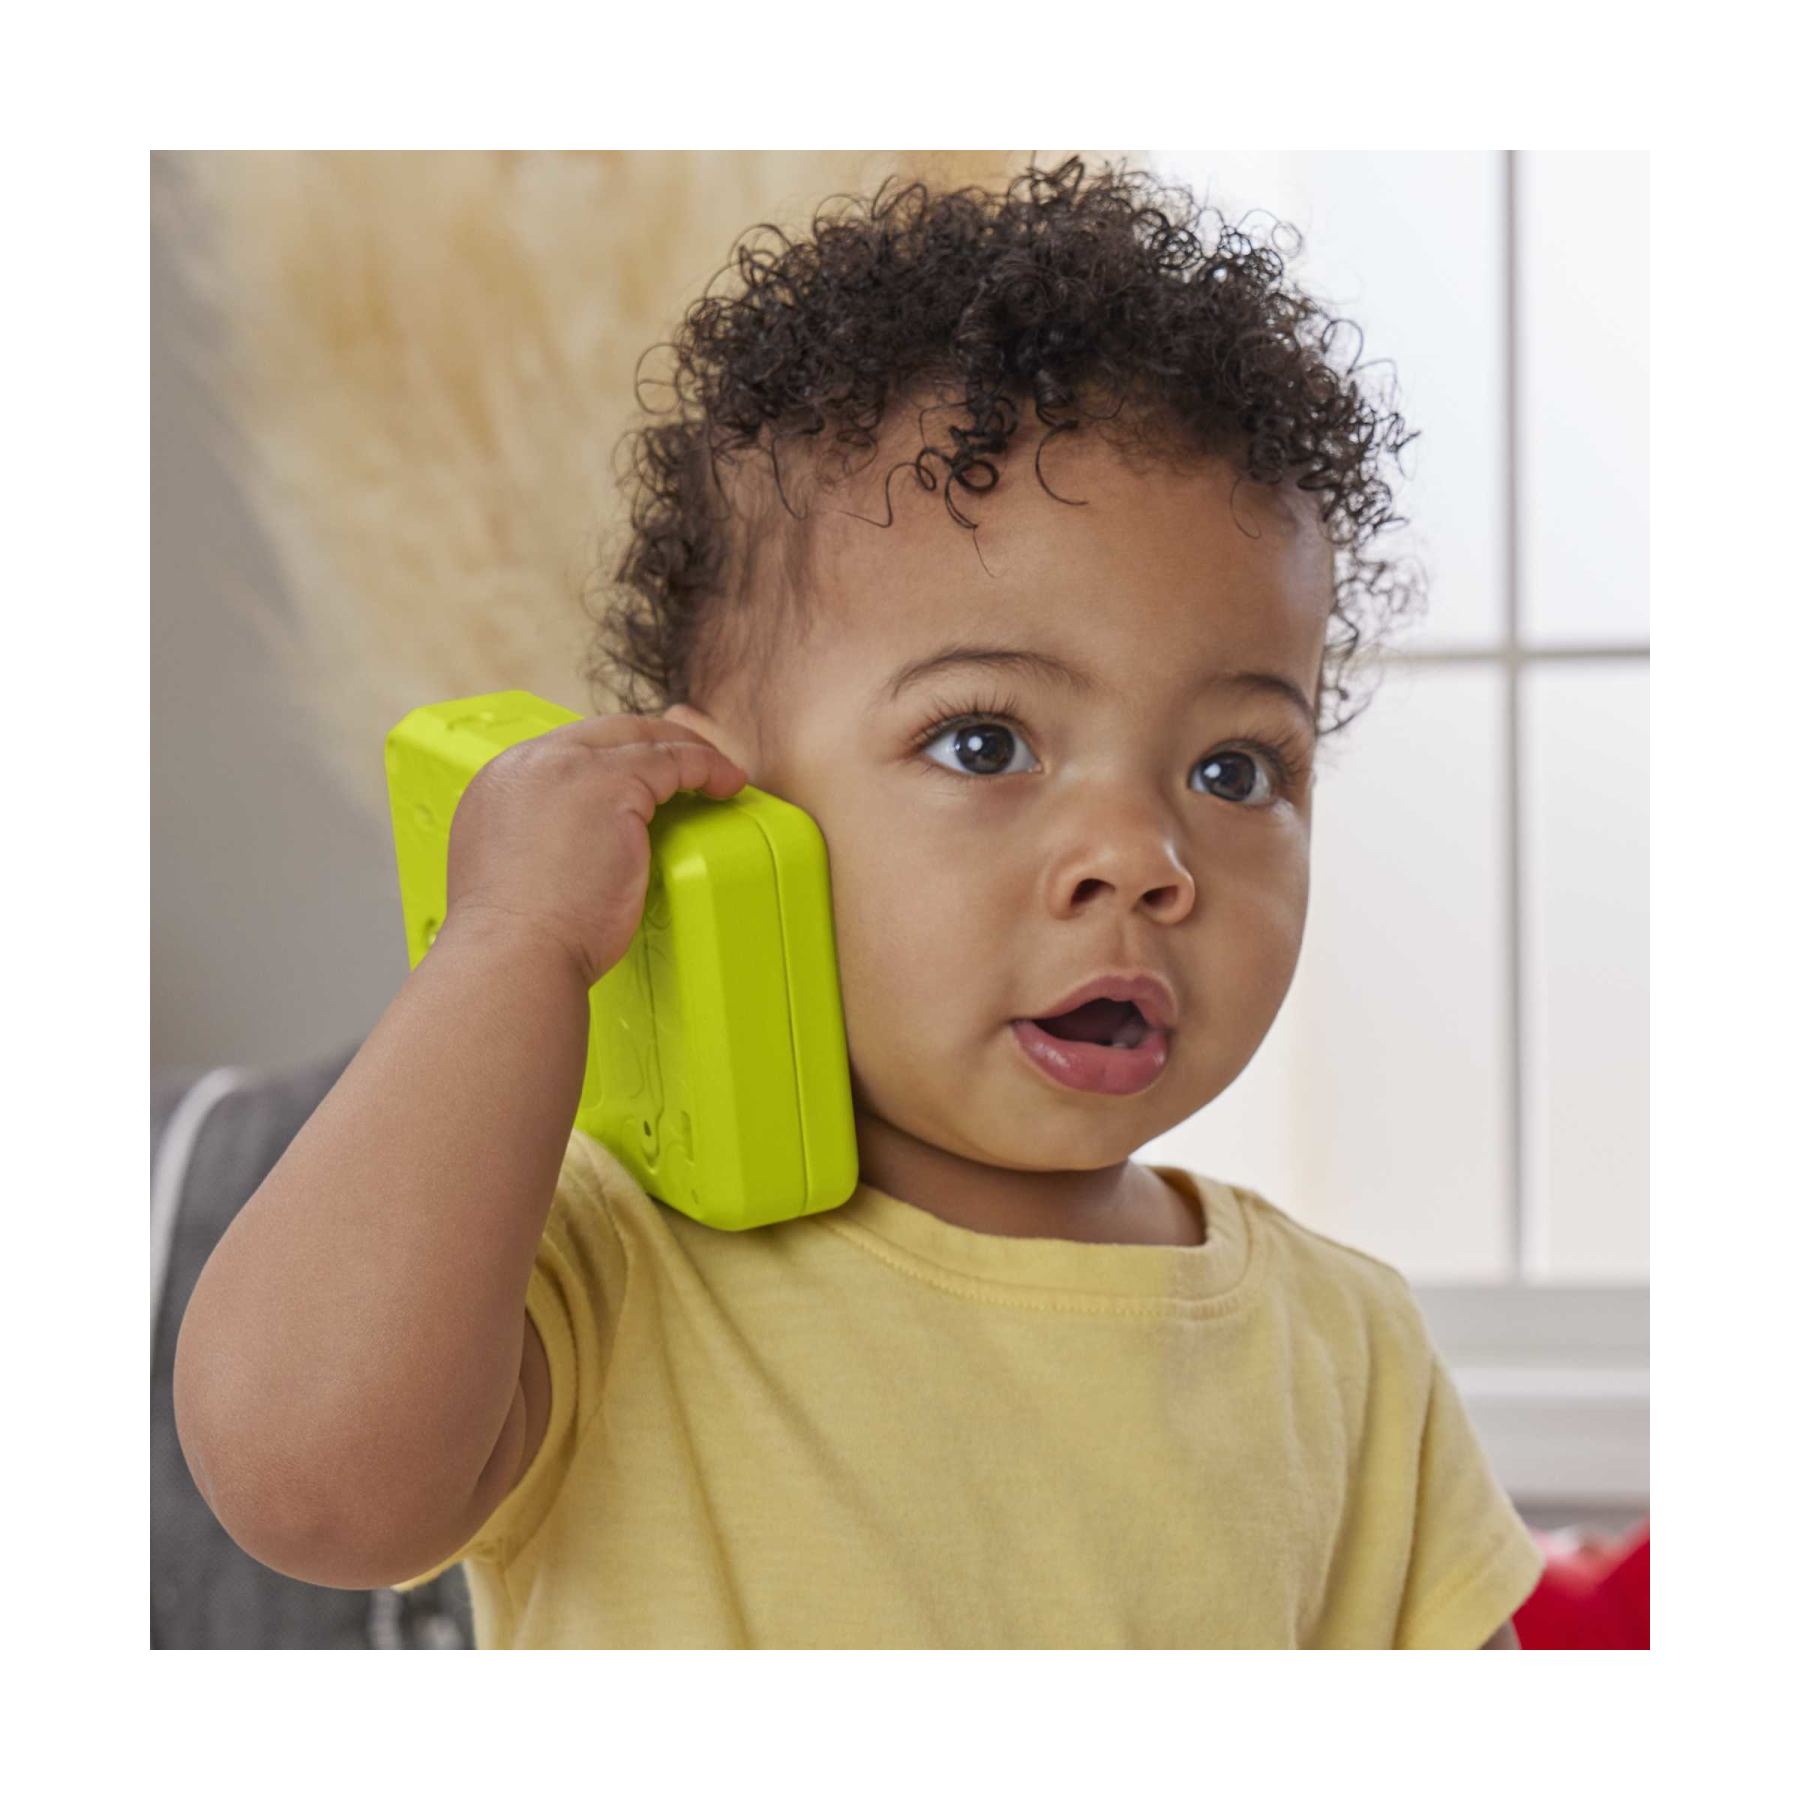 Fisher-price - smartphone scorri e impara, telefono giocattolo educativo con luci, musica e contenuti multilingue, giocattolo per bambini, 9-36 mesi, hnl45 - FISHER-PRICE